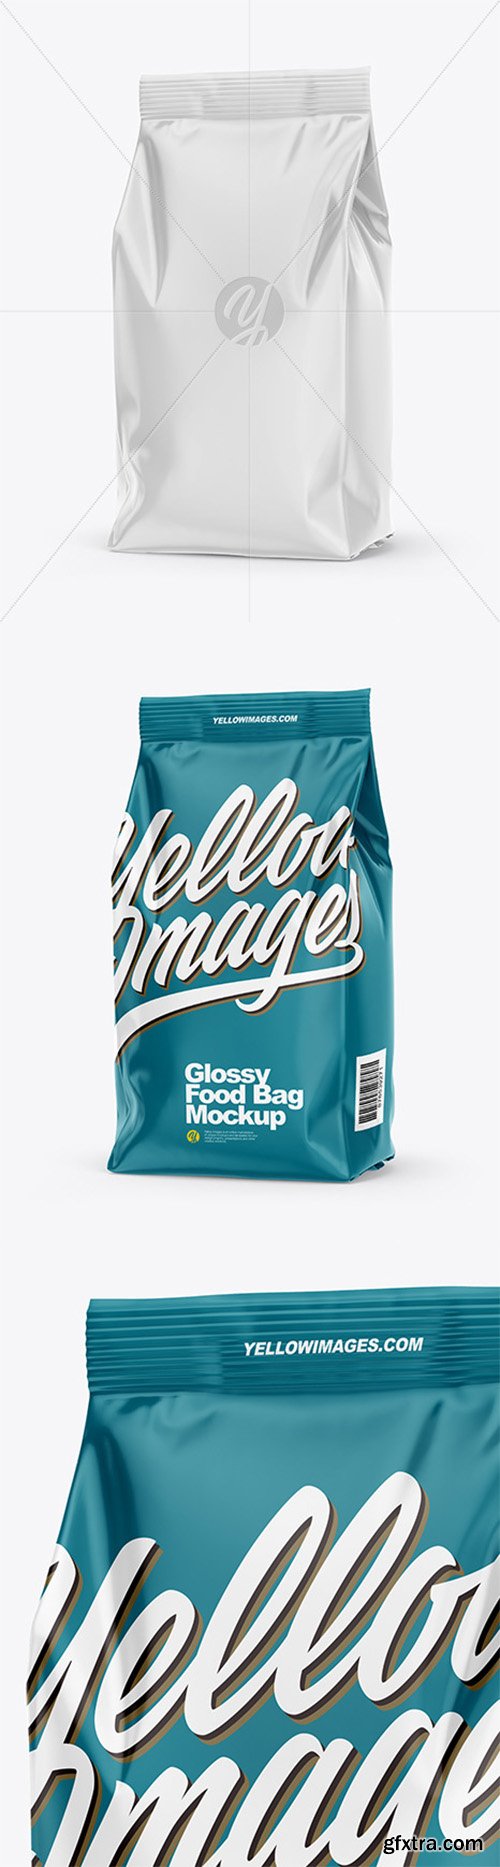 Glossy Food Bag Mockup – Half Side View 66328